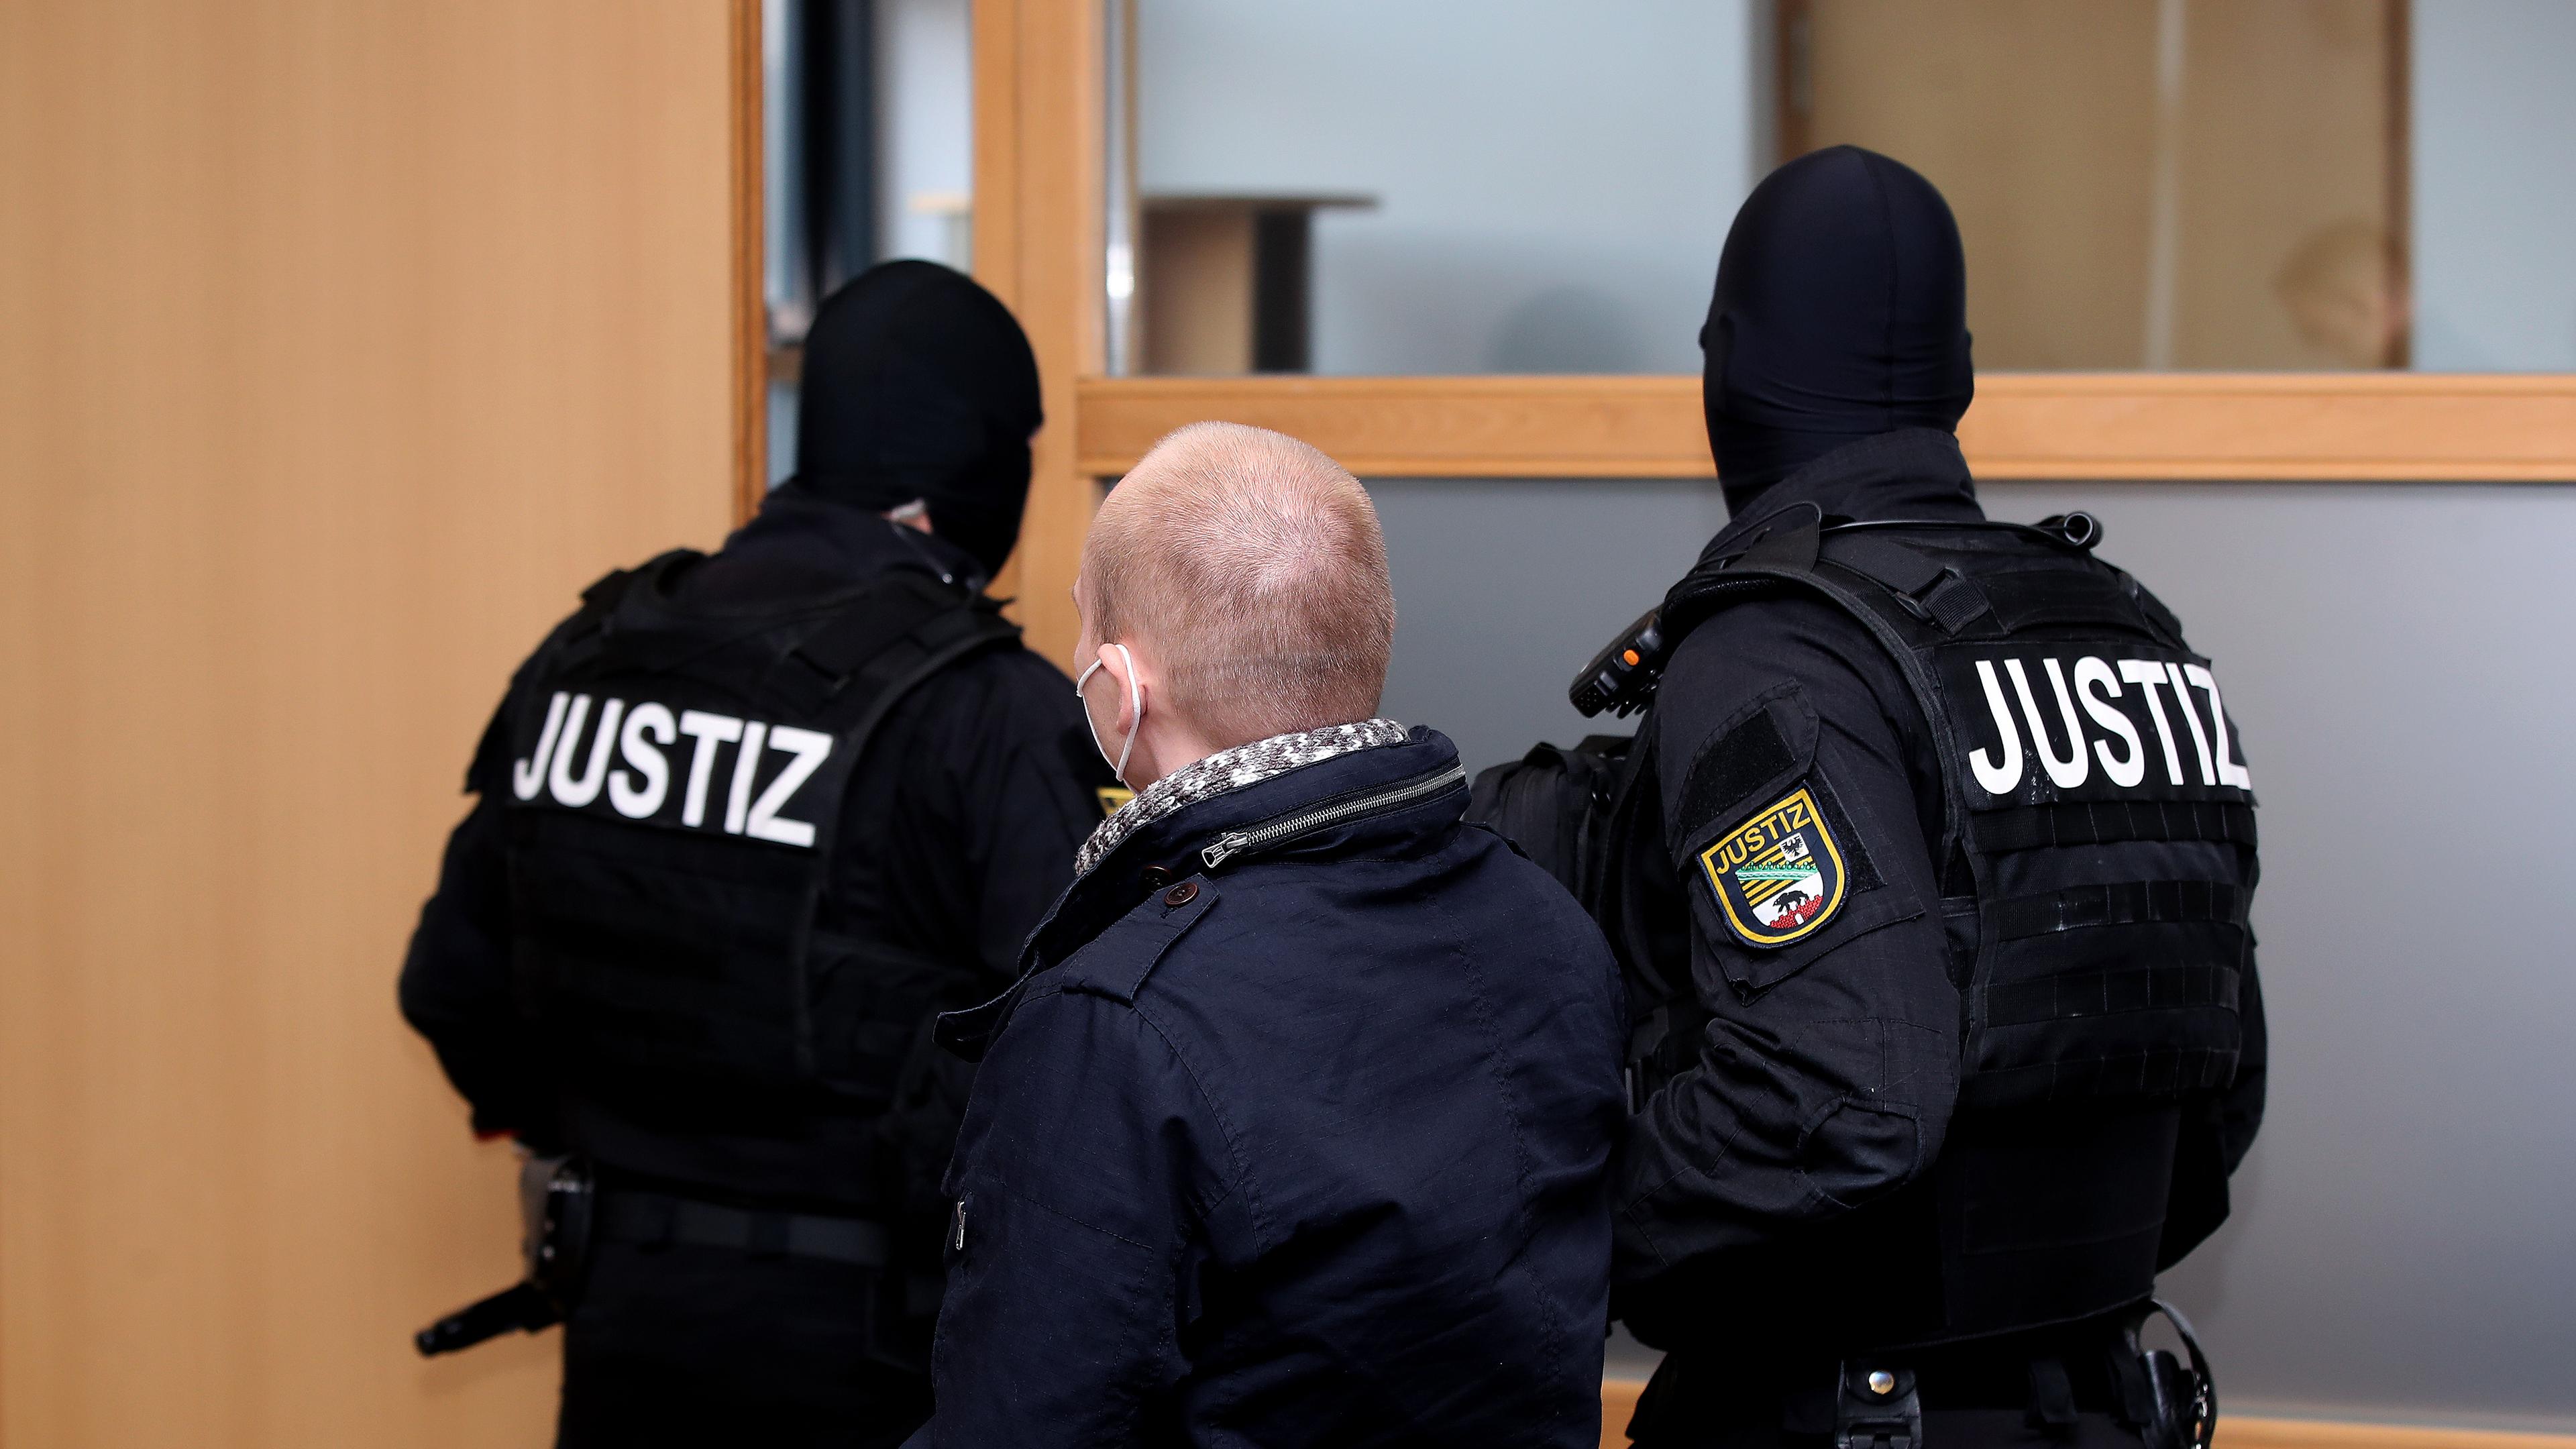 Der Angeklagte Stephan Balliet (l) wird aus dem Gerichtssaal geführt, aufgenommen am 21.12.2020 in Magdeburg